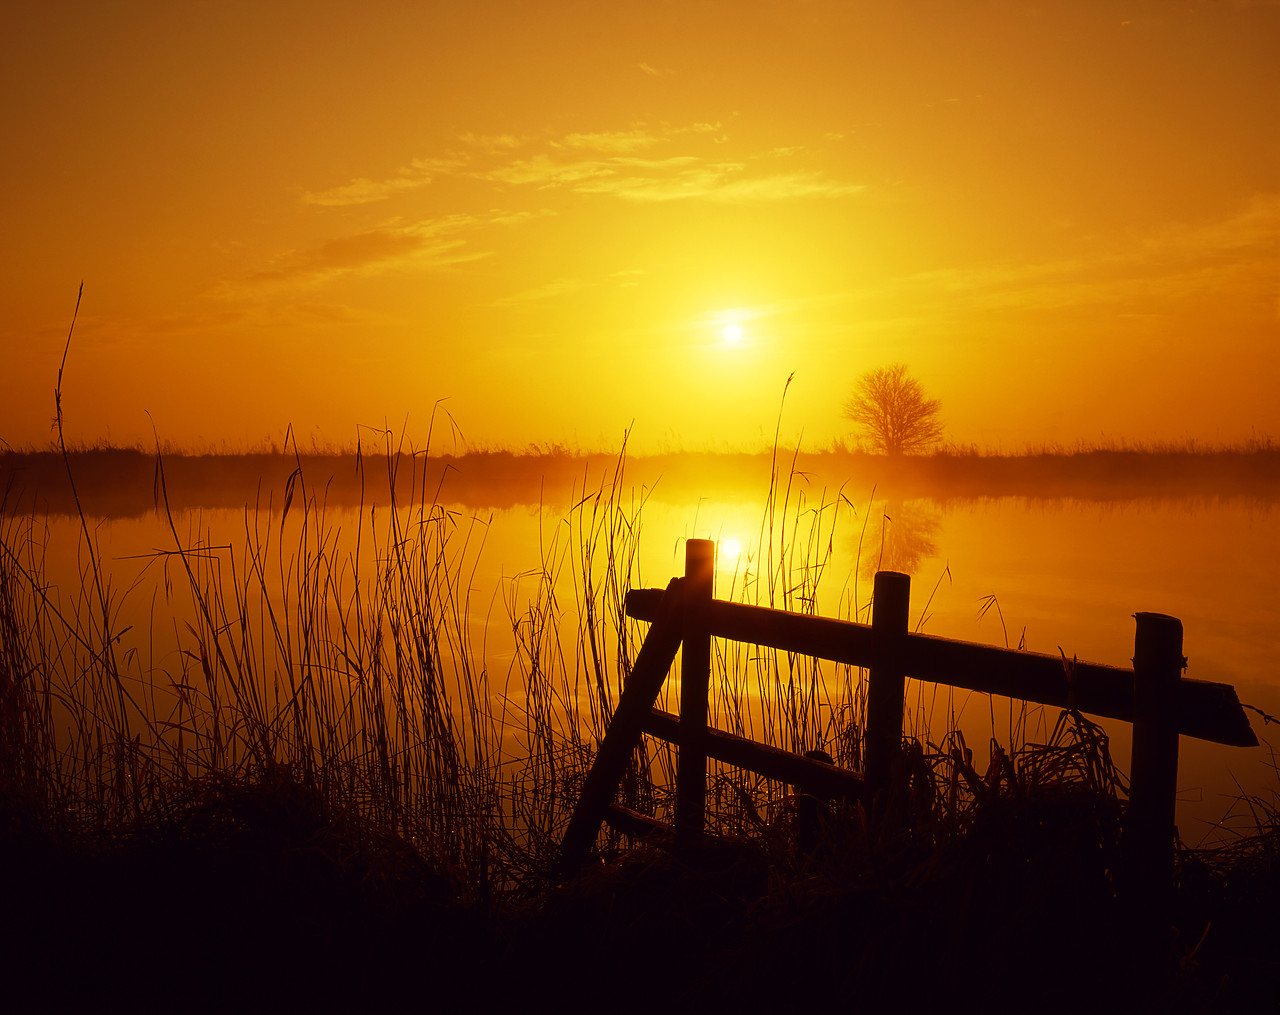 #881210-1 - Misty Sunrise over River Bure, Norfolk, England